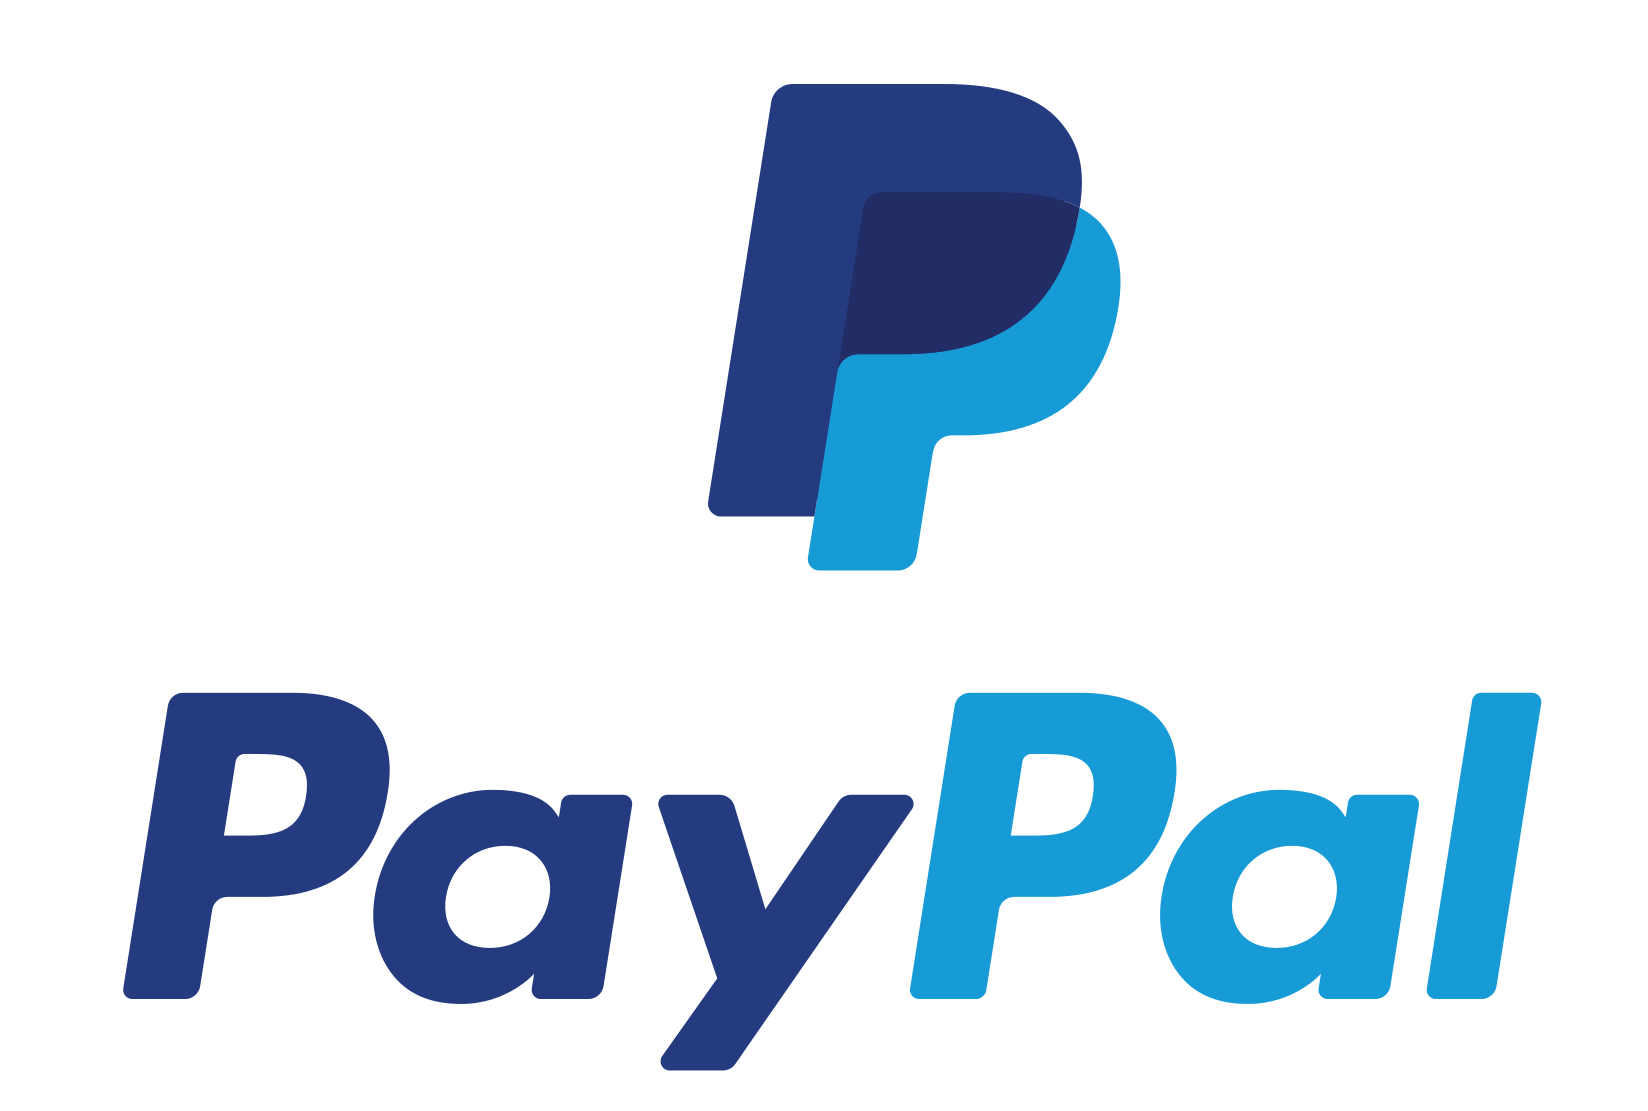 Paypal PNG 무료 다운로드